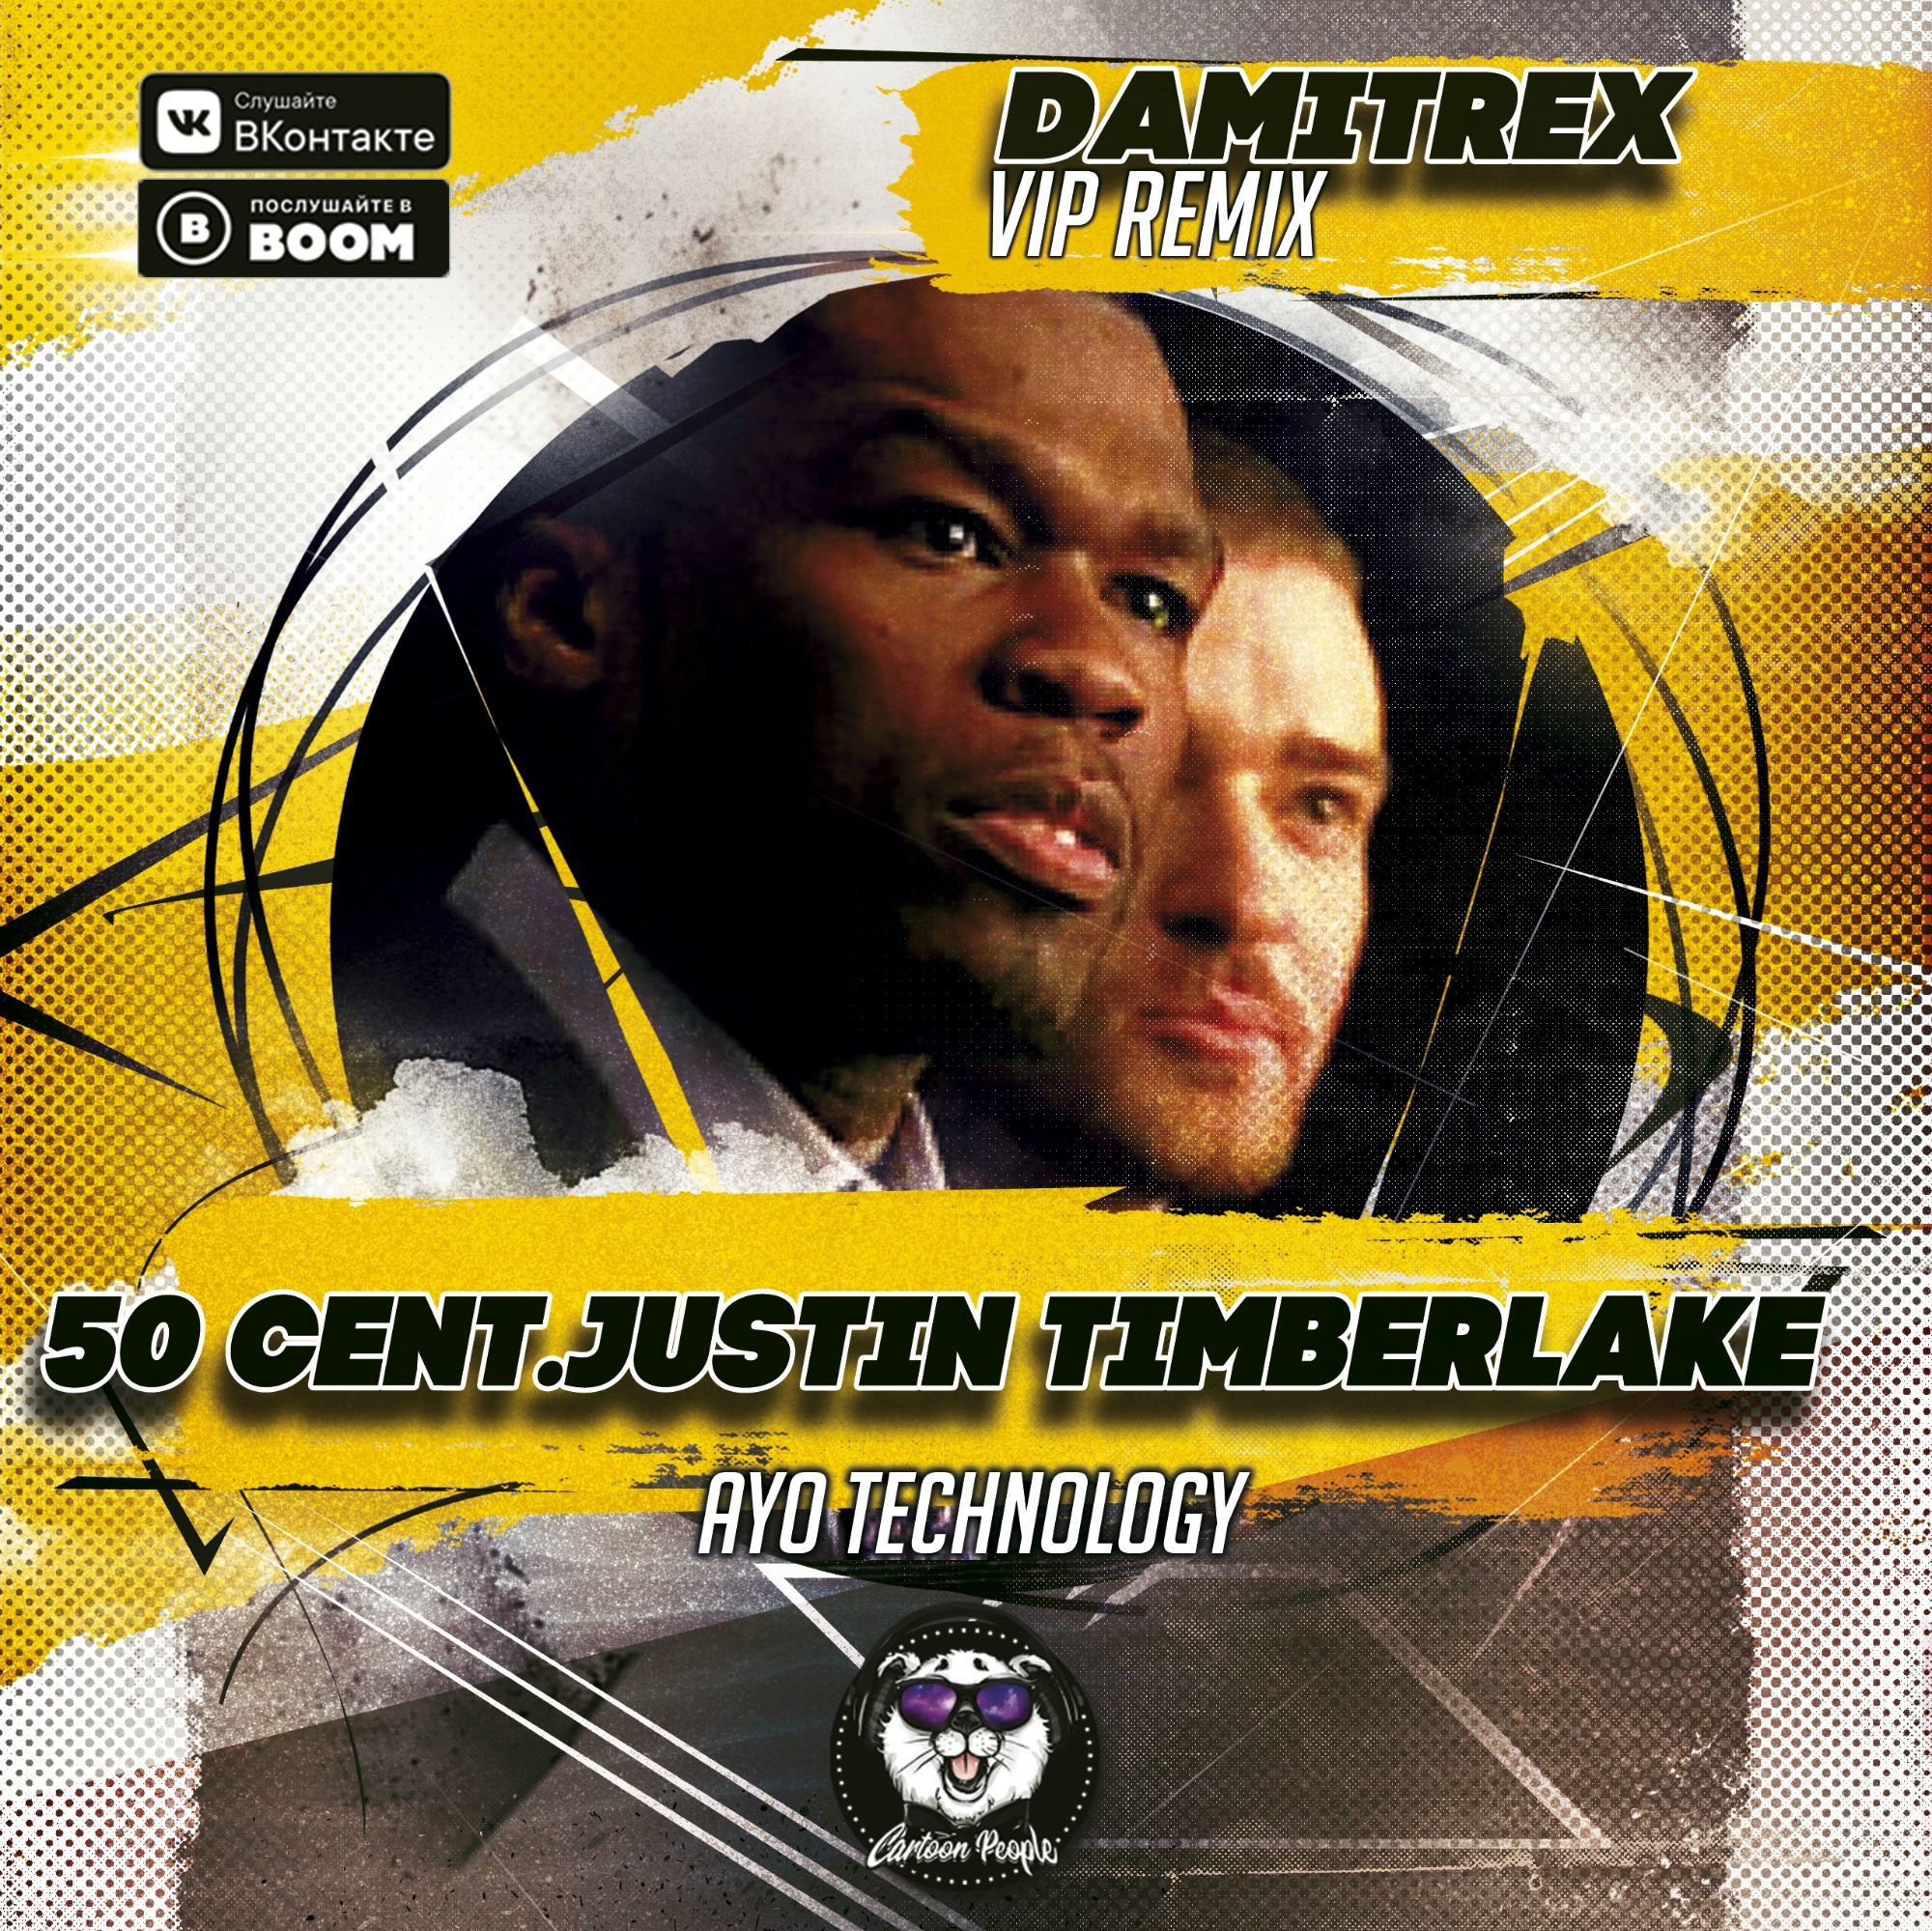 Timberlake technologies. 50 Cent Ayo Technology. 50 Cent Justin Timberlake Ayo Technology. Ayo Technology 50 Cent, Justin Timberlake, Timbaland. Джастин Тимберлейк 50 Cent.